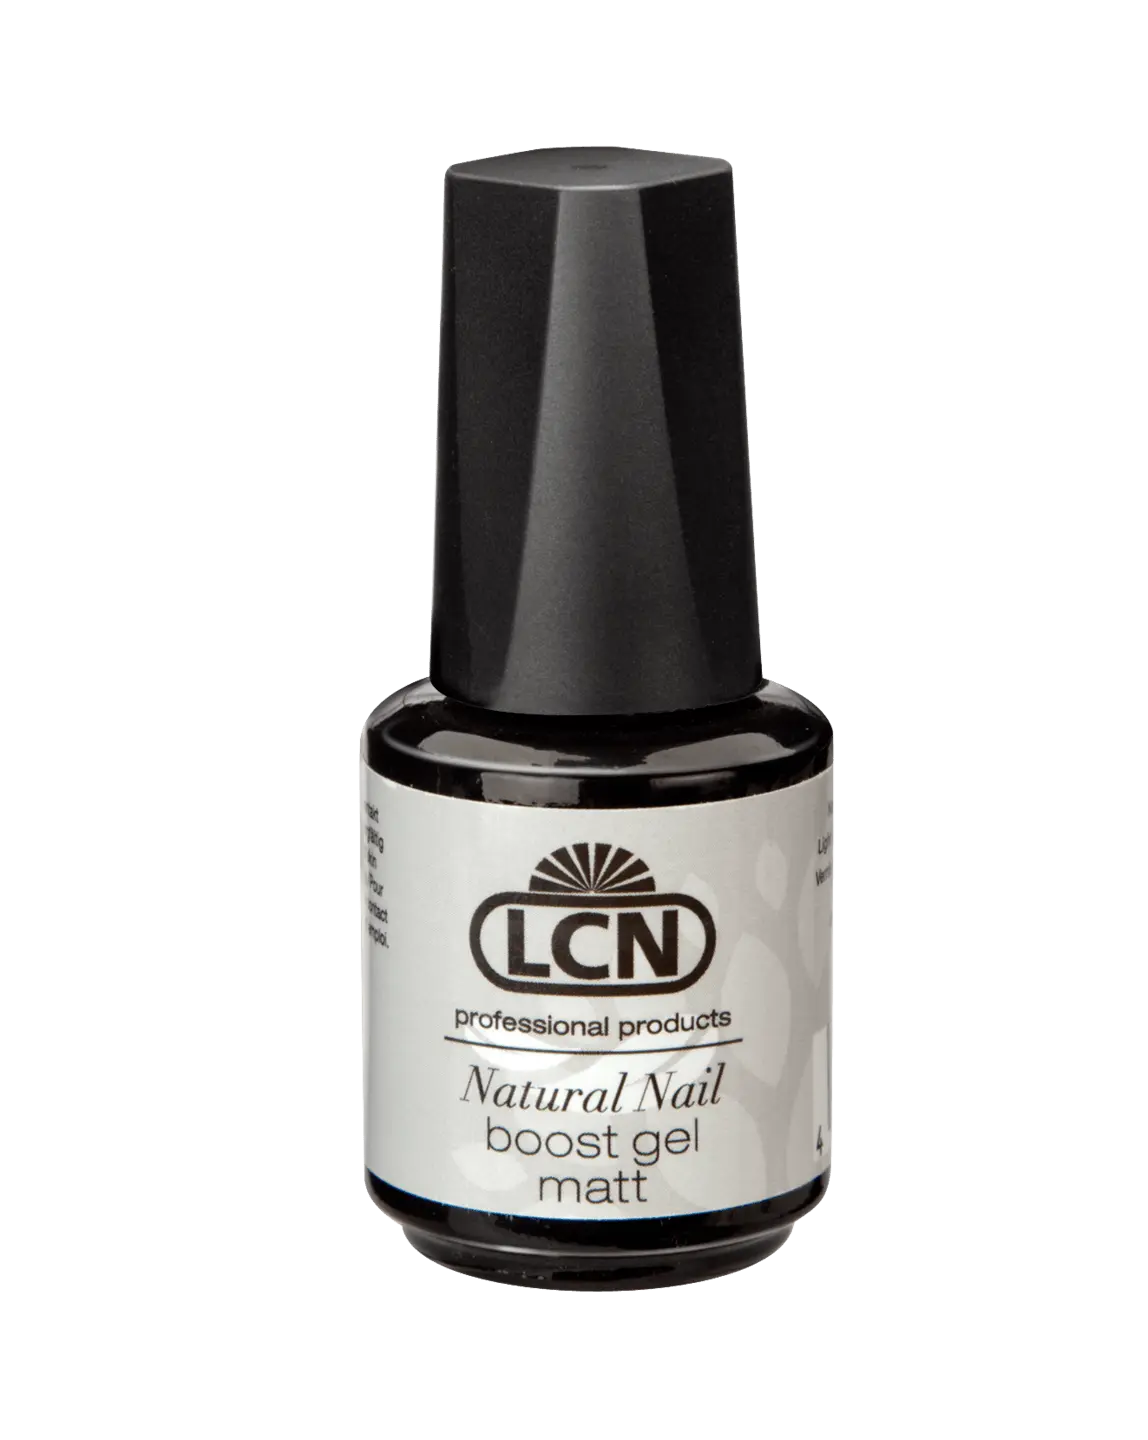 LCN Natural Nail Boost Gel "Matt"